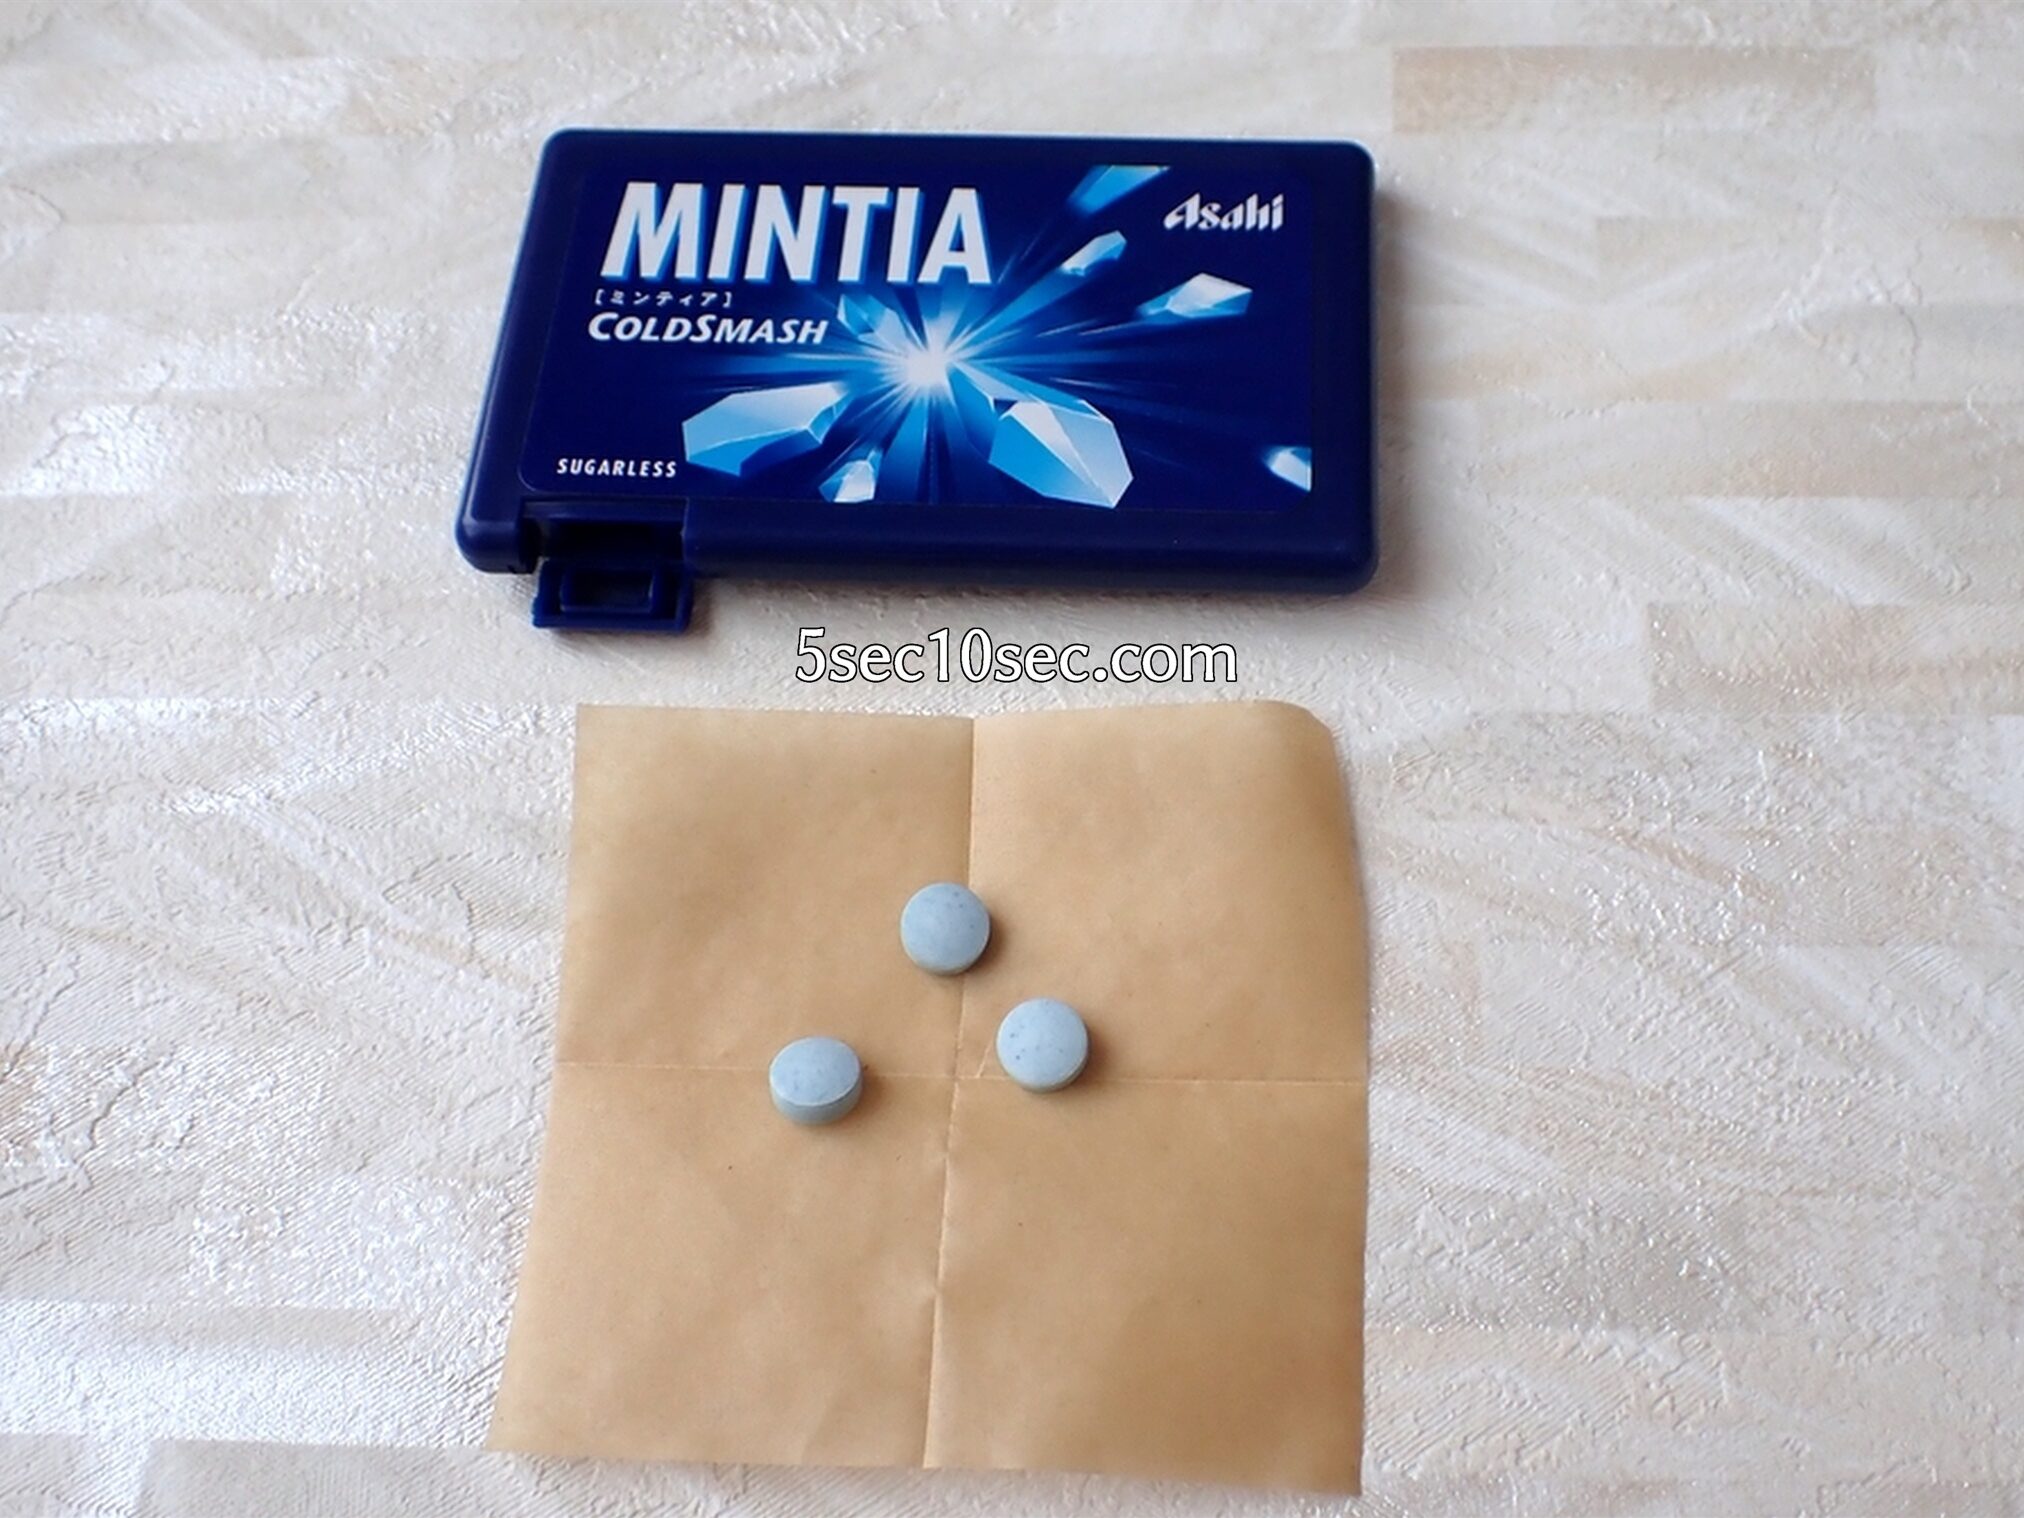 中身のミントタブレット菓子の写真 新MINTIA 新ミンティア コールドスマッシュ COLDSMASH